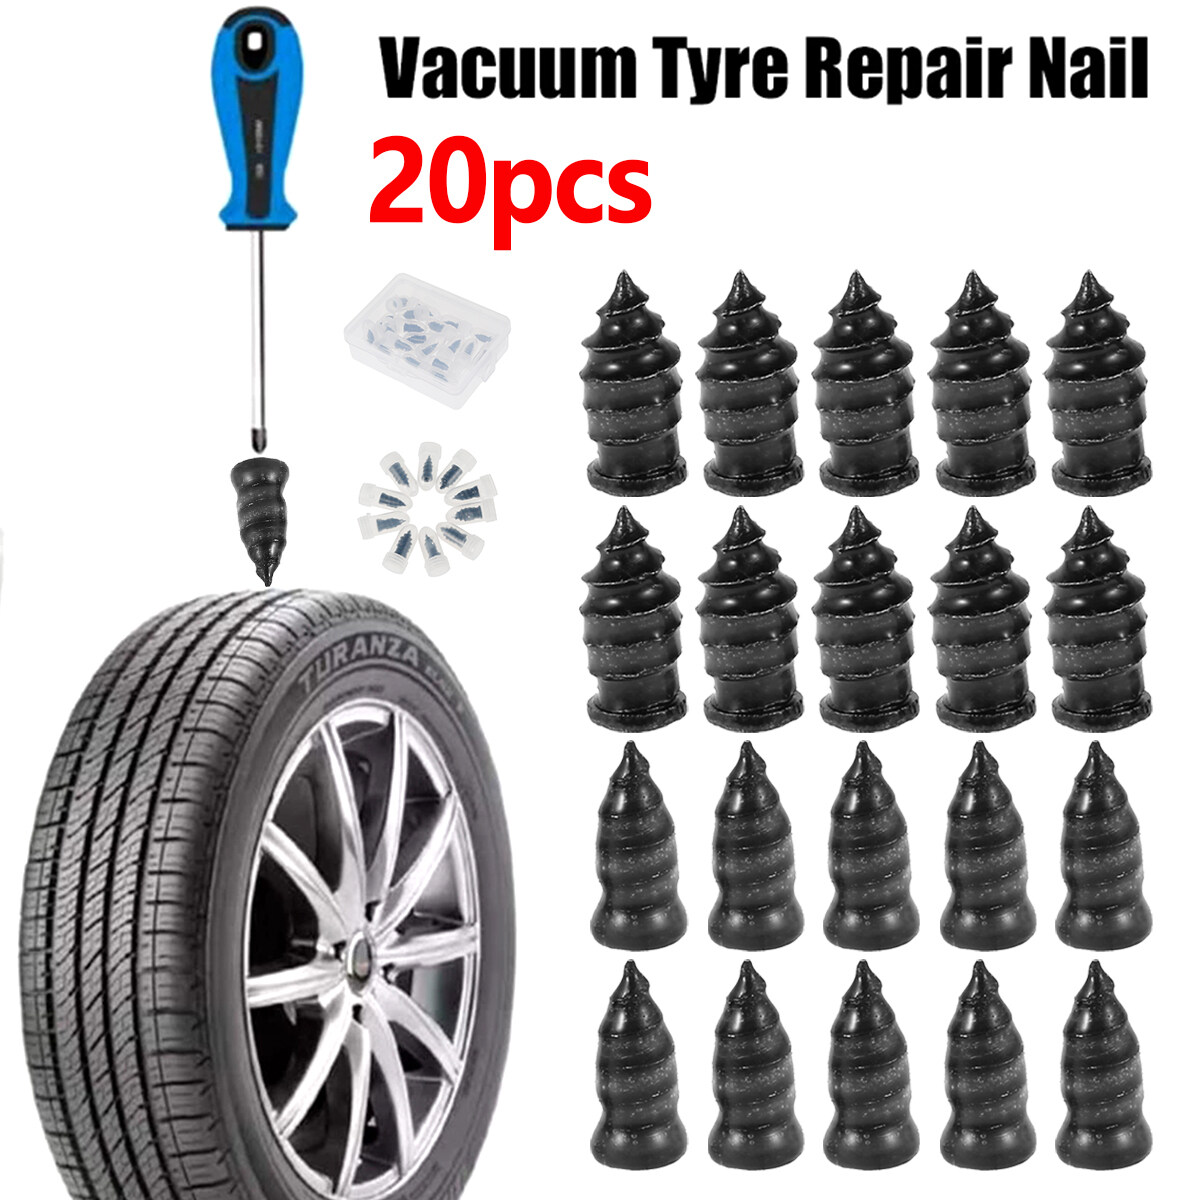 Tire Repair Rubber Nail Large, 30Pcs Quick Fix Tubeless Tyre Repair Kit for Bike Motorcycle Truck Vacuum Tyre Repair Nail 